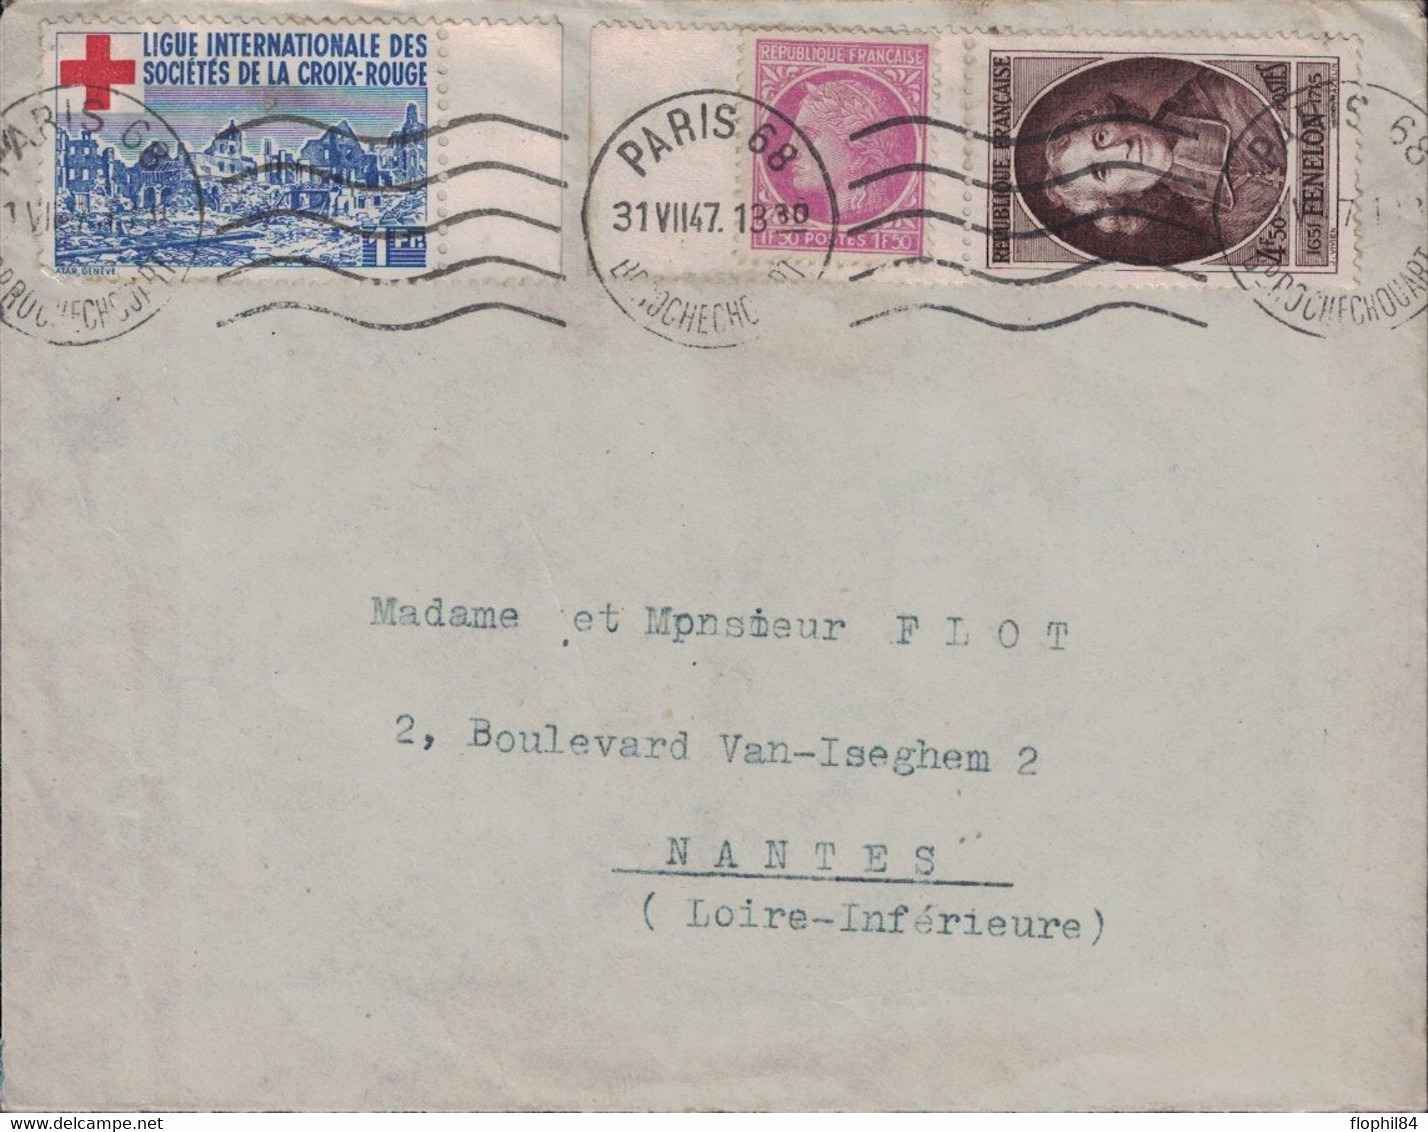 PARIS 68 - BD ROCHECHOUARD - TIMBRE DE DE LA LIGUE DES STES DE LA CROIX ROUGE - BEL AFFRANCHISSEMENT - 31-7-1947. - Rotes Kreuz